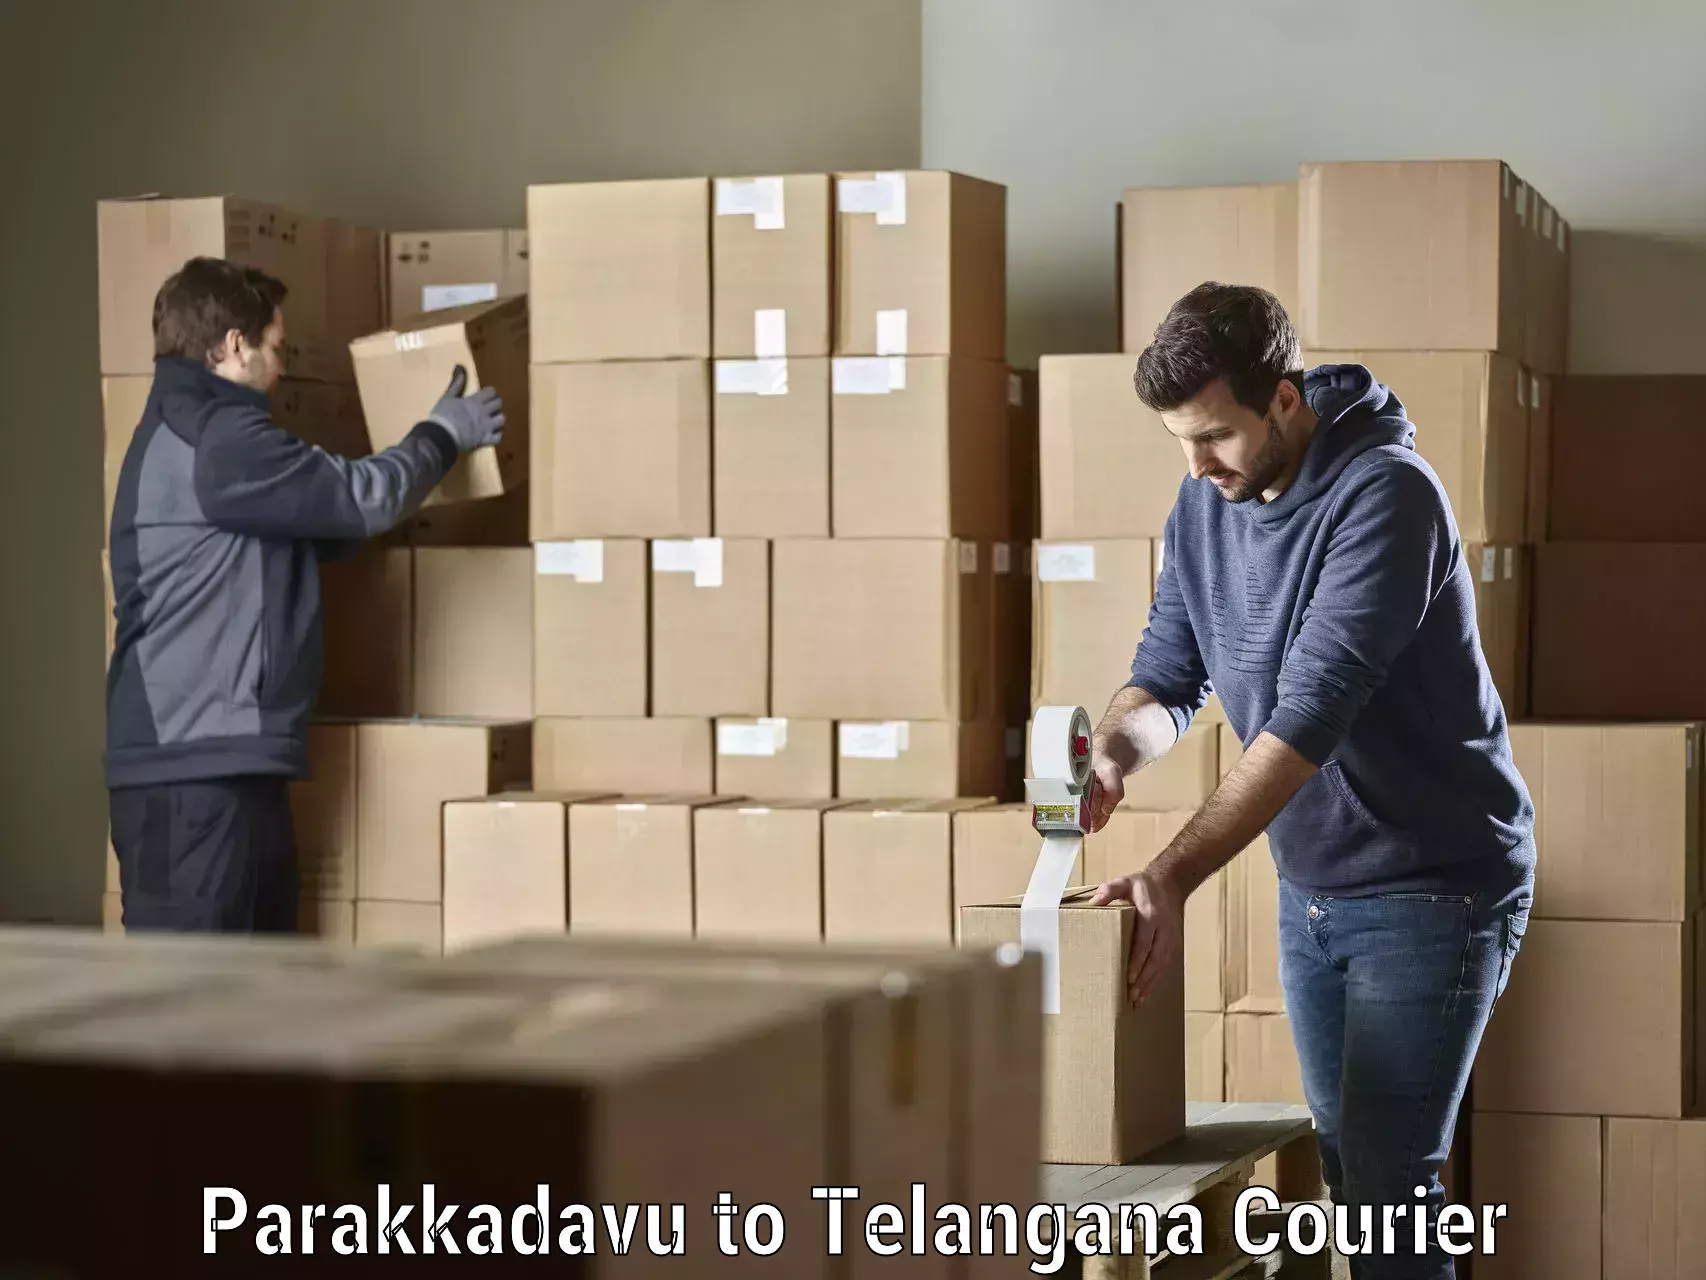 Professional parcel services Parakkadavu to Mahadevpur